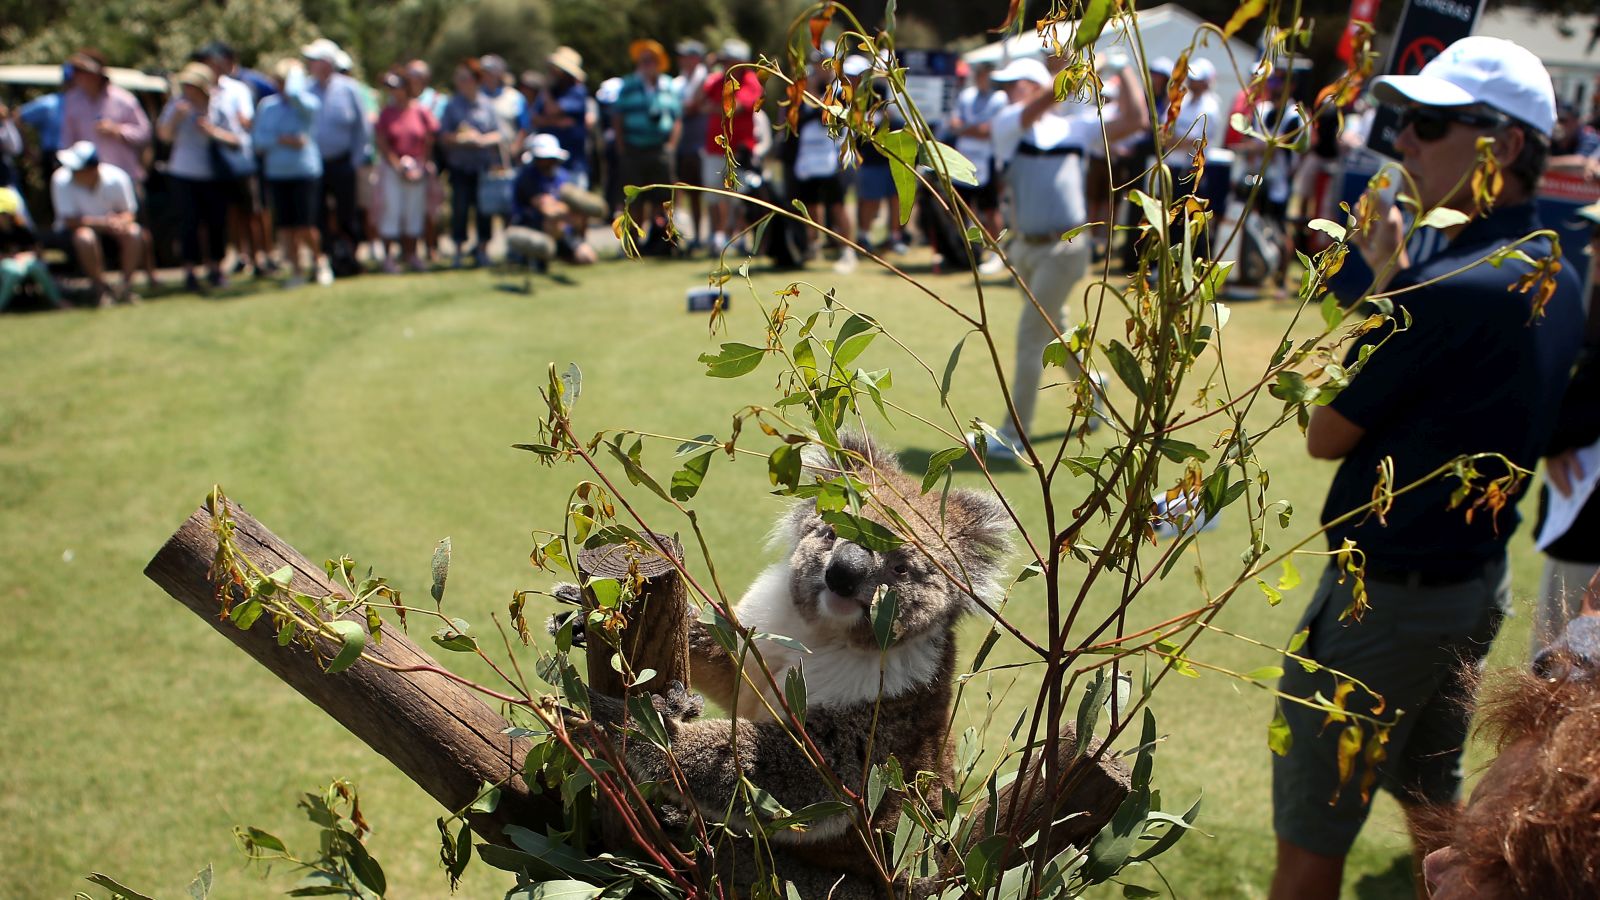 Lustiger Geselle: Dieser Koala schaut bei der ISPS Handa Vic Open in Australien den Golfern zu. © Jack Thomas/Getty Images